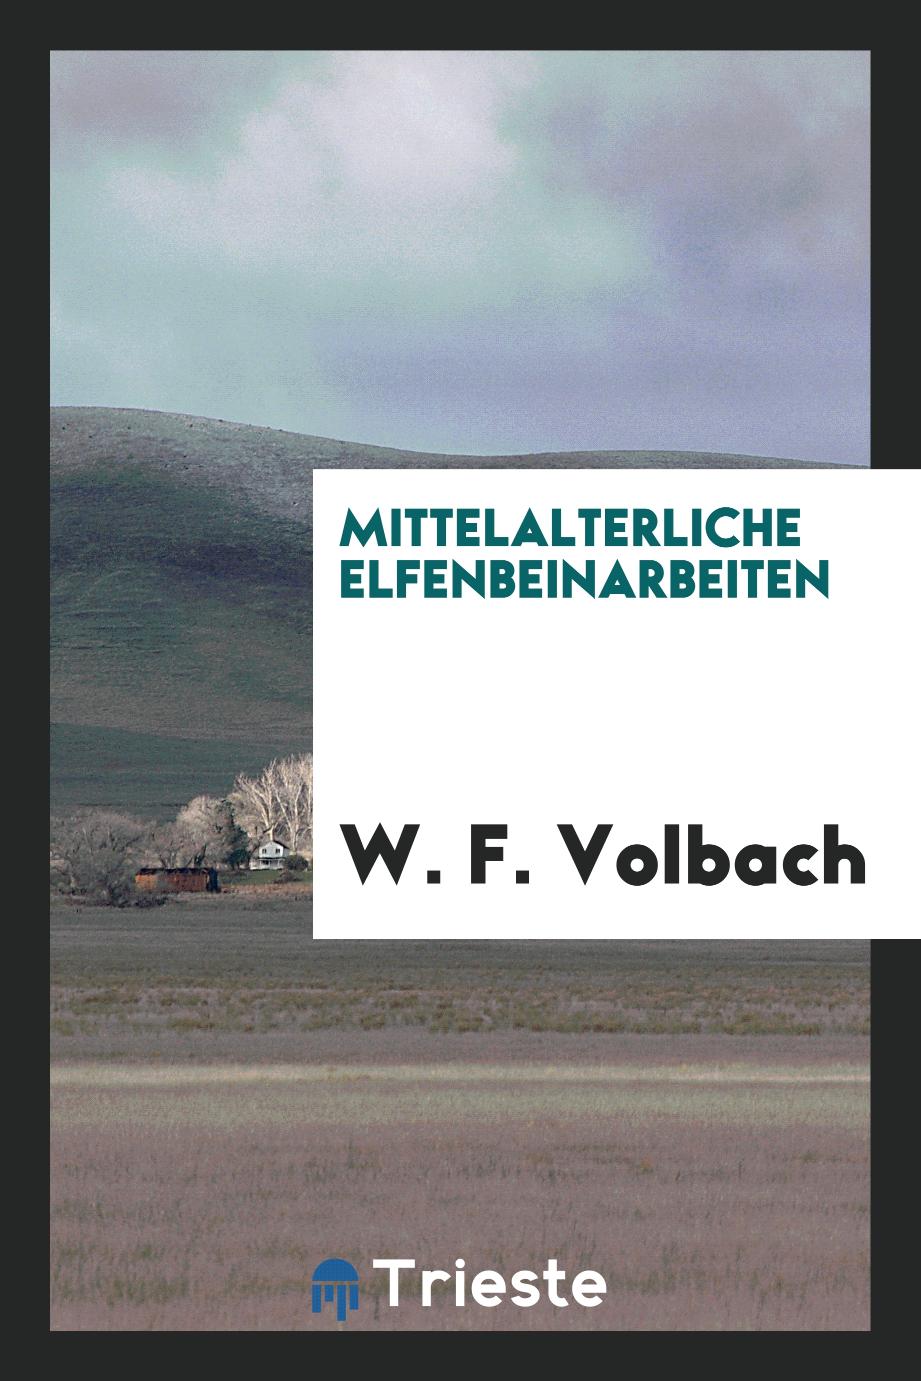 W. F. Volbach - Mittelalterliche Elfenbeinarbeiten